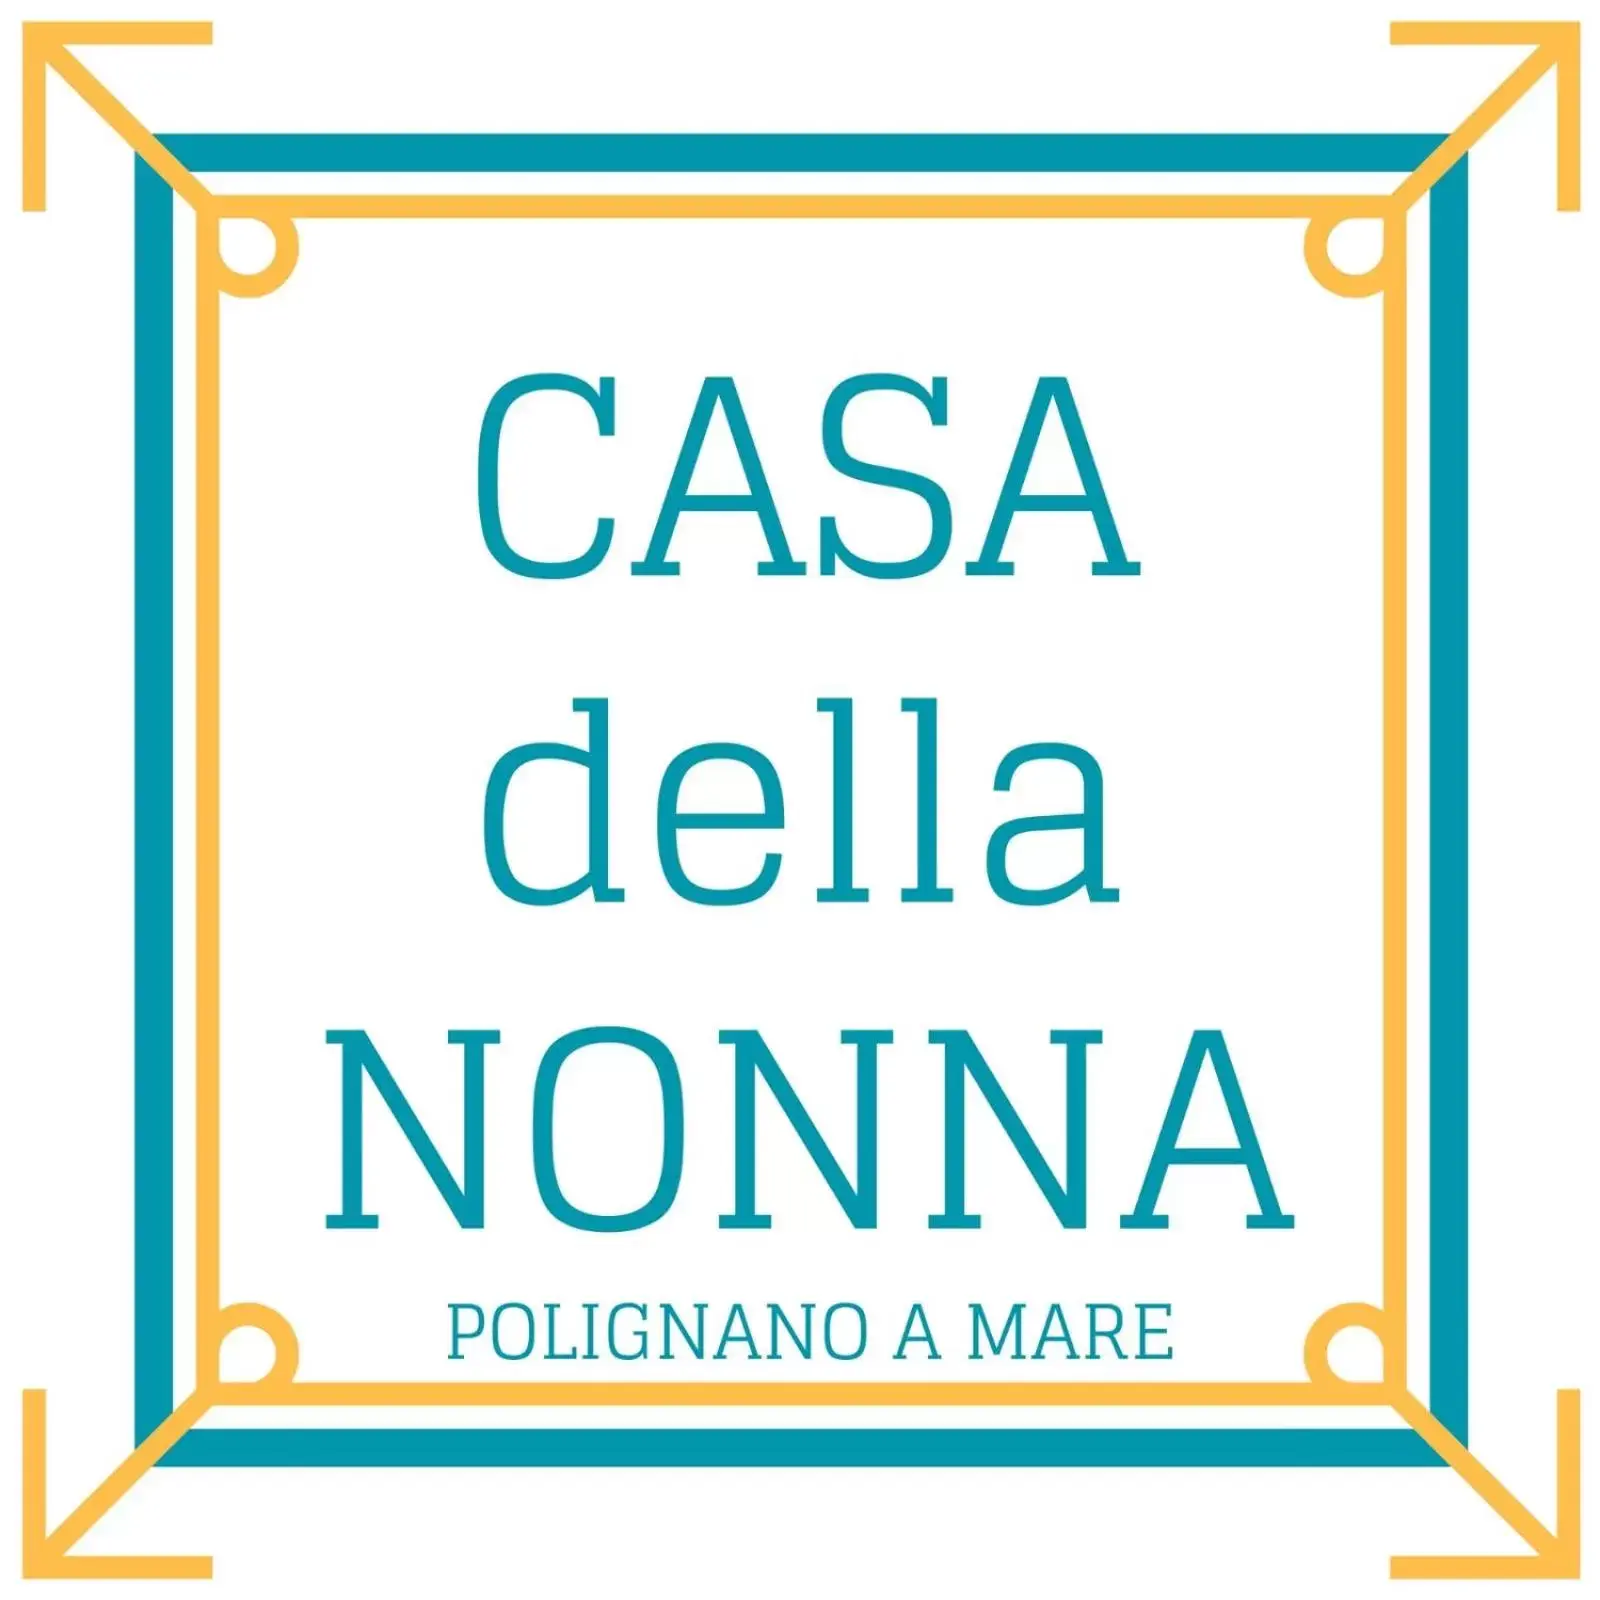 Property logo or sign in Casa della Nonna Polignano a mare